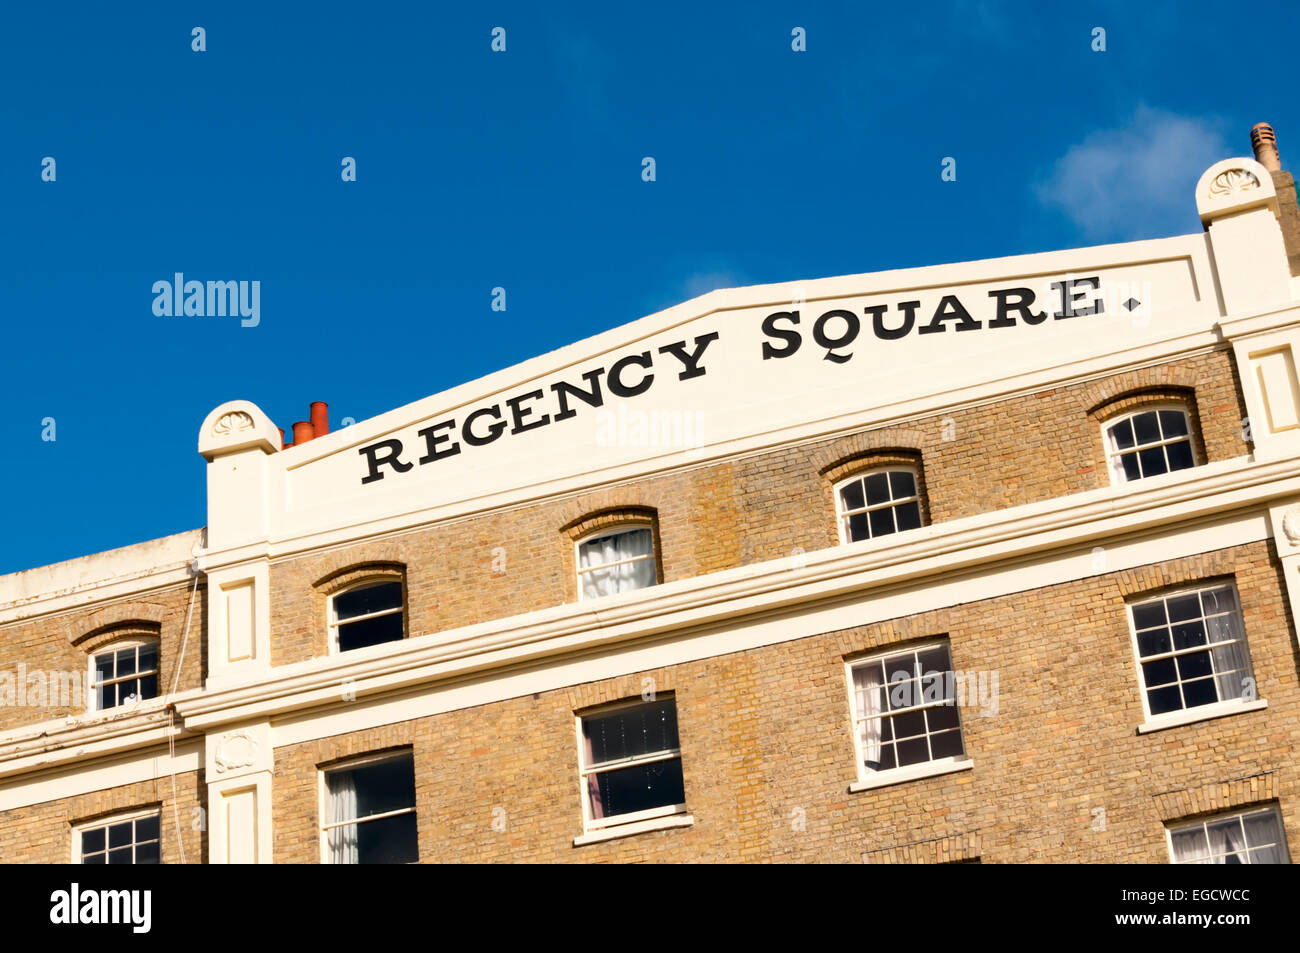 Le nom de Regency Square à Brighton écrit sur le fronton de l'un des immeubles autour de la place. Banque D'Images